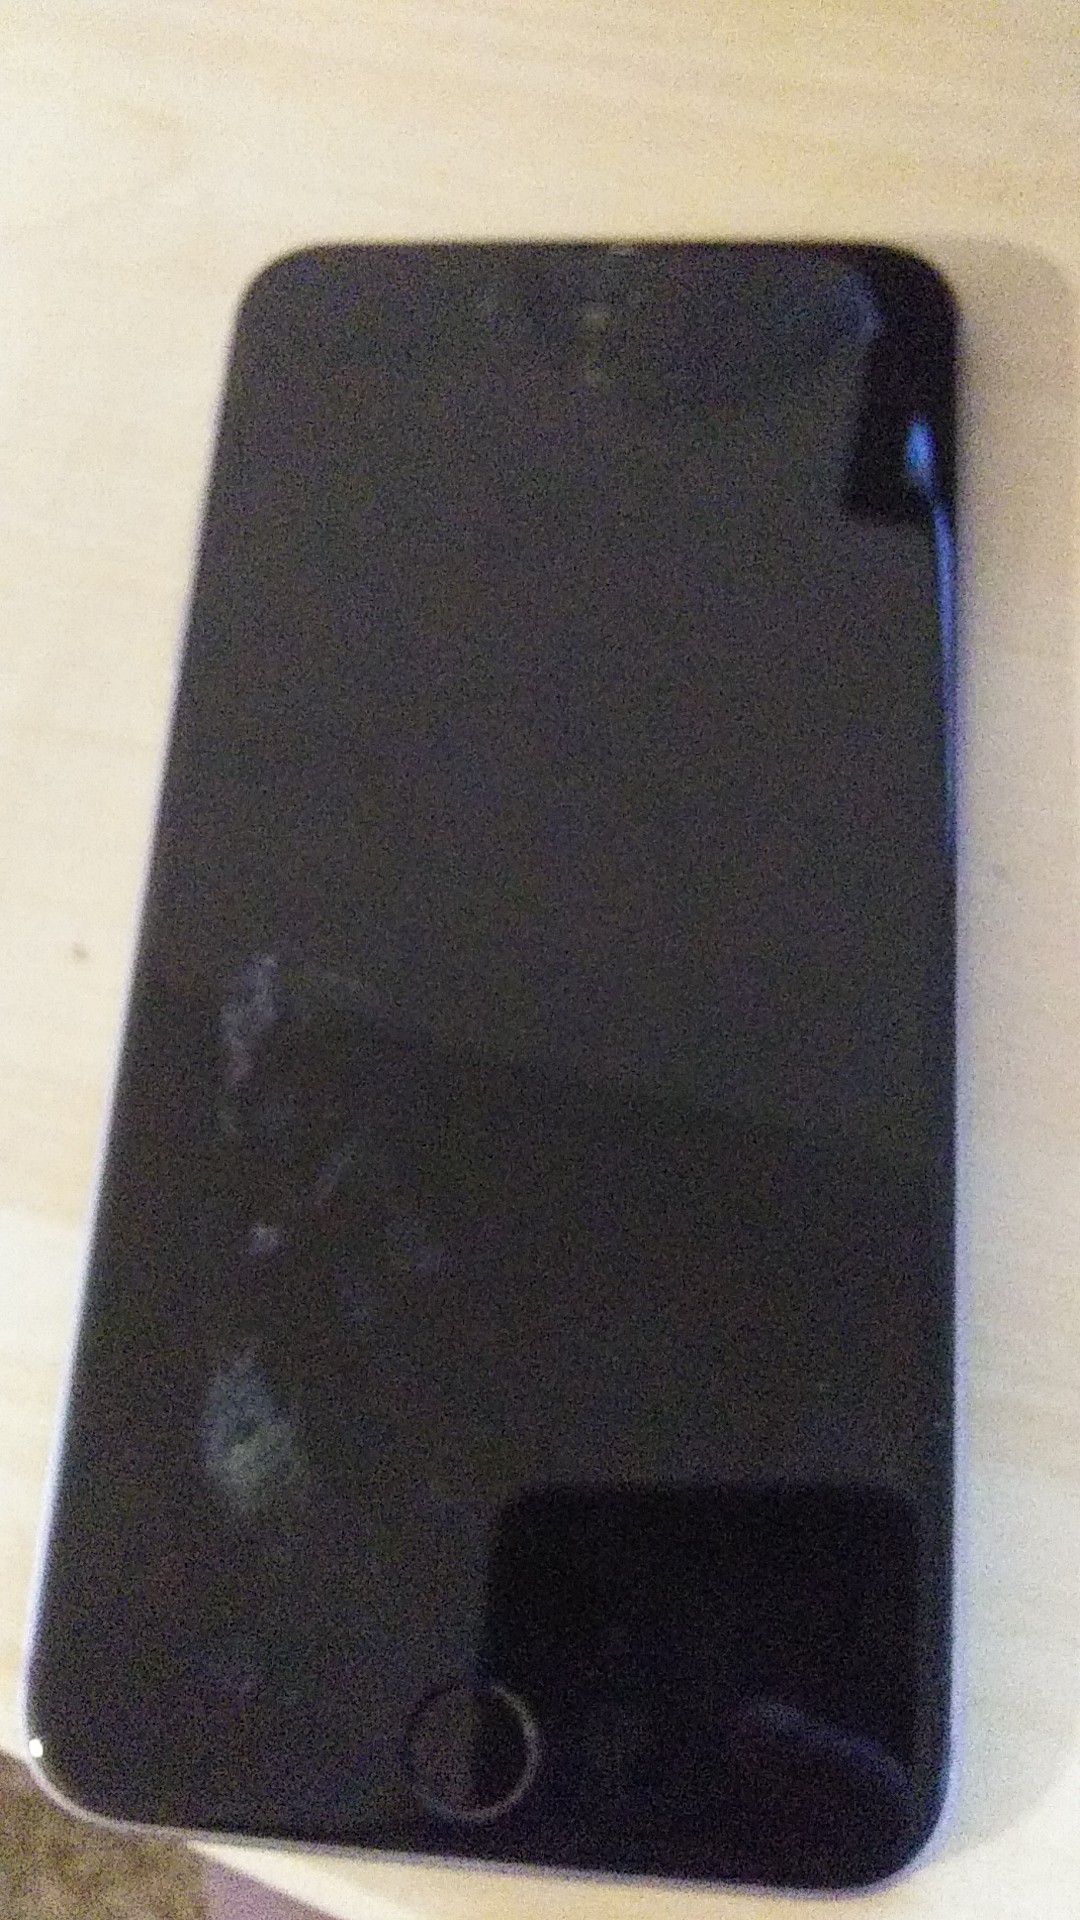 I phone 6 gray